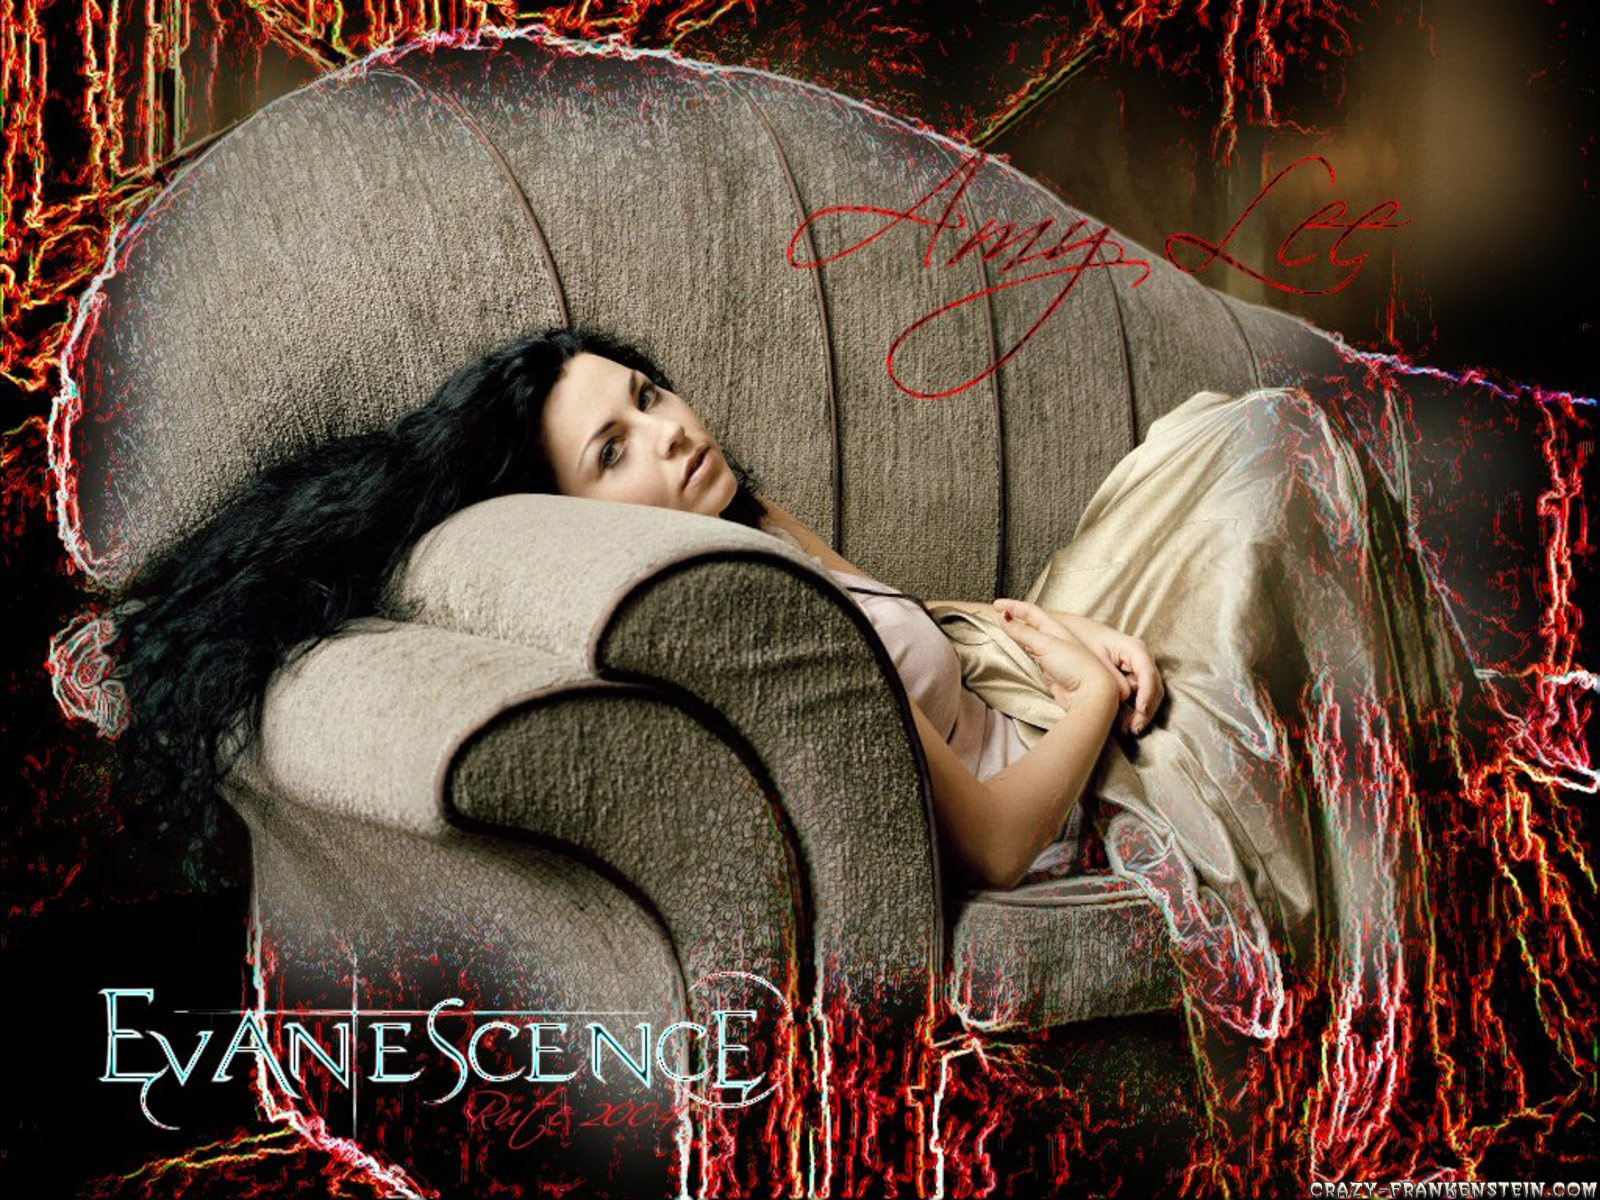 Красивые обои с Эми Ли из Evanescence